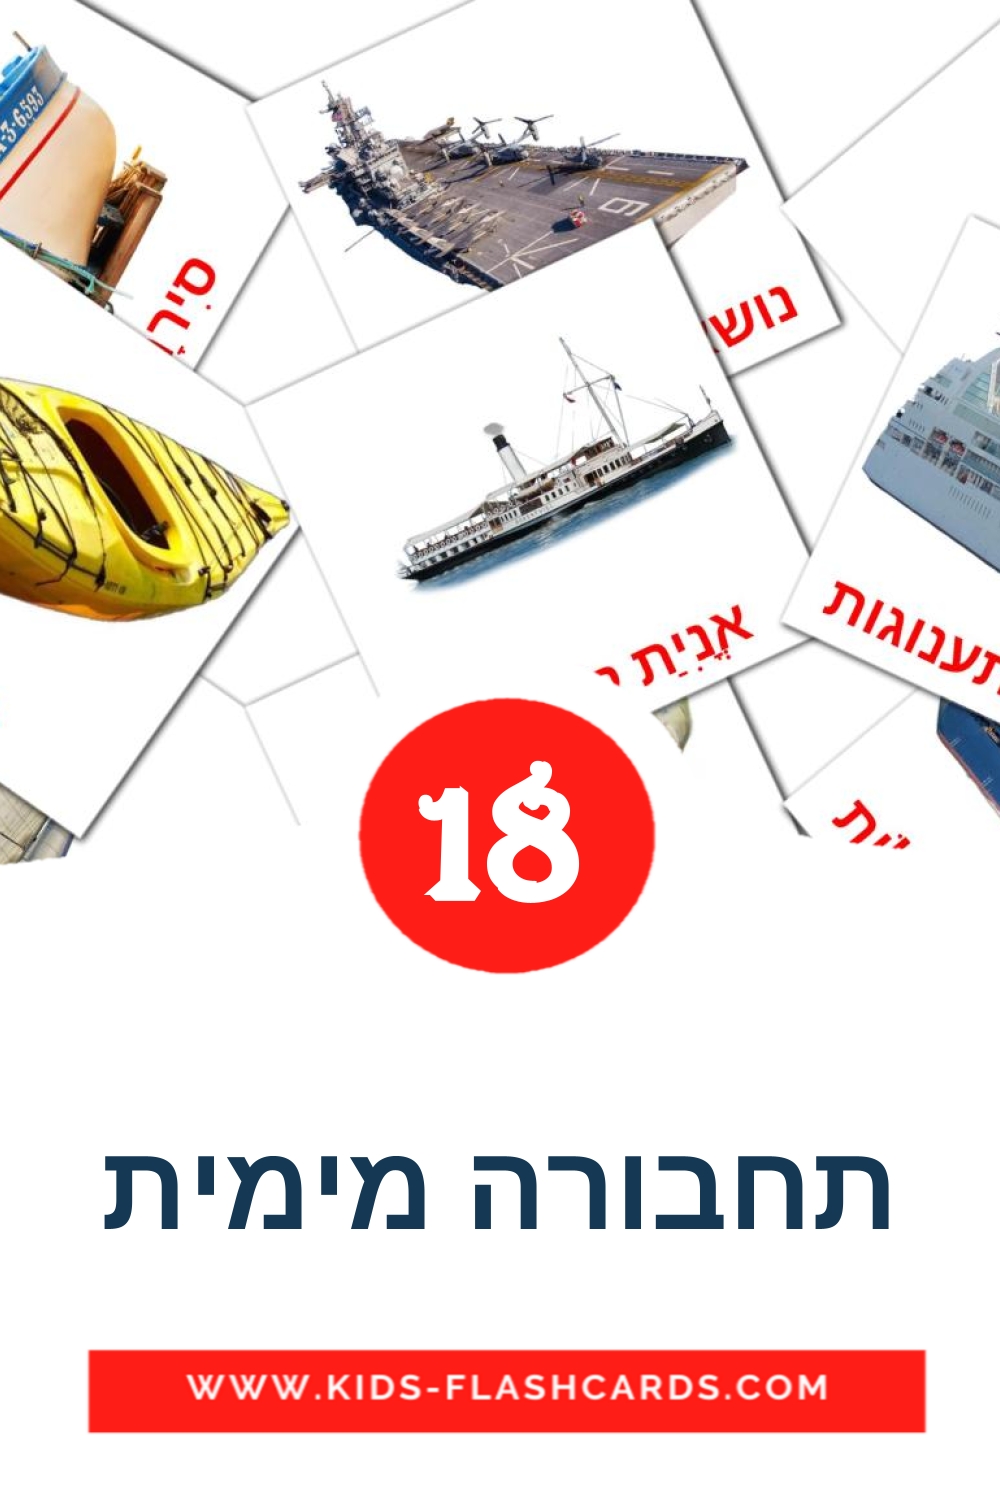 18 תחבורה מימית Bildkarten für den Kindergarten auf Hebräisch